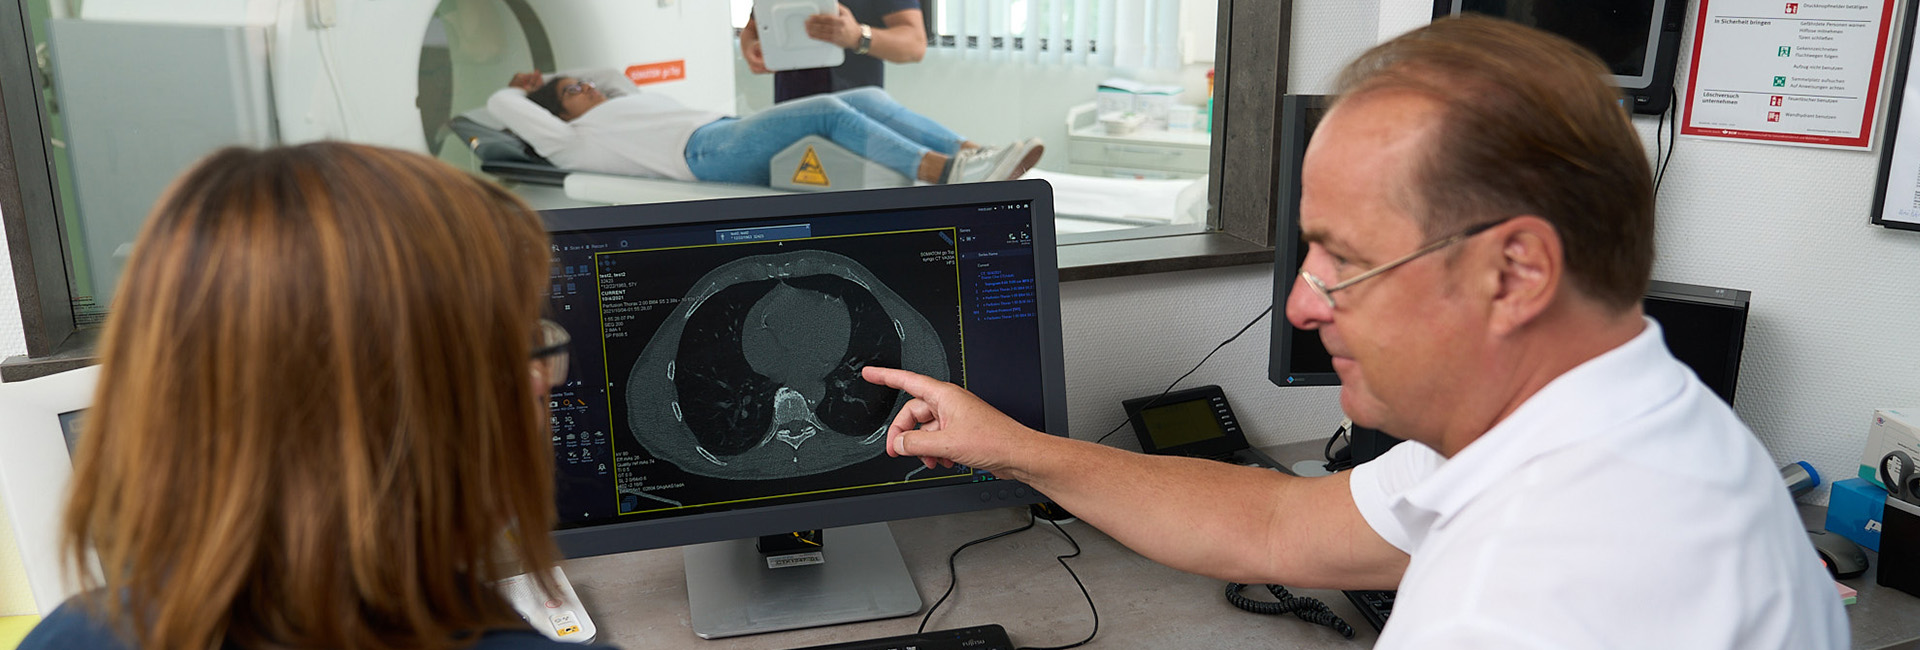 Ultraschalluntersuchungen, MRT (Magnetresonanztomographie) | Strahlenexposition | Praxis für Radiologie & Nuklearmedizin